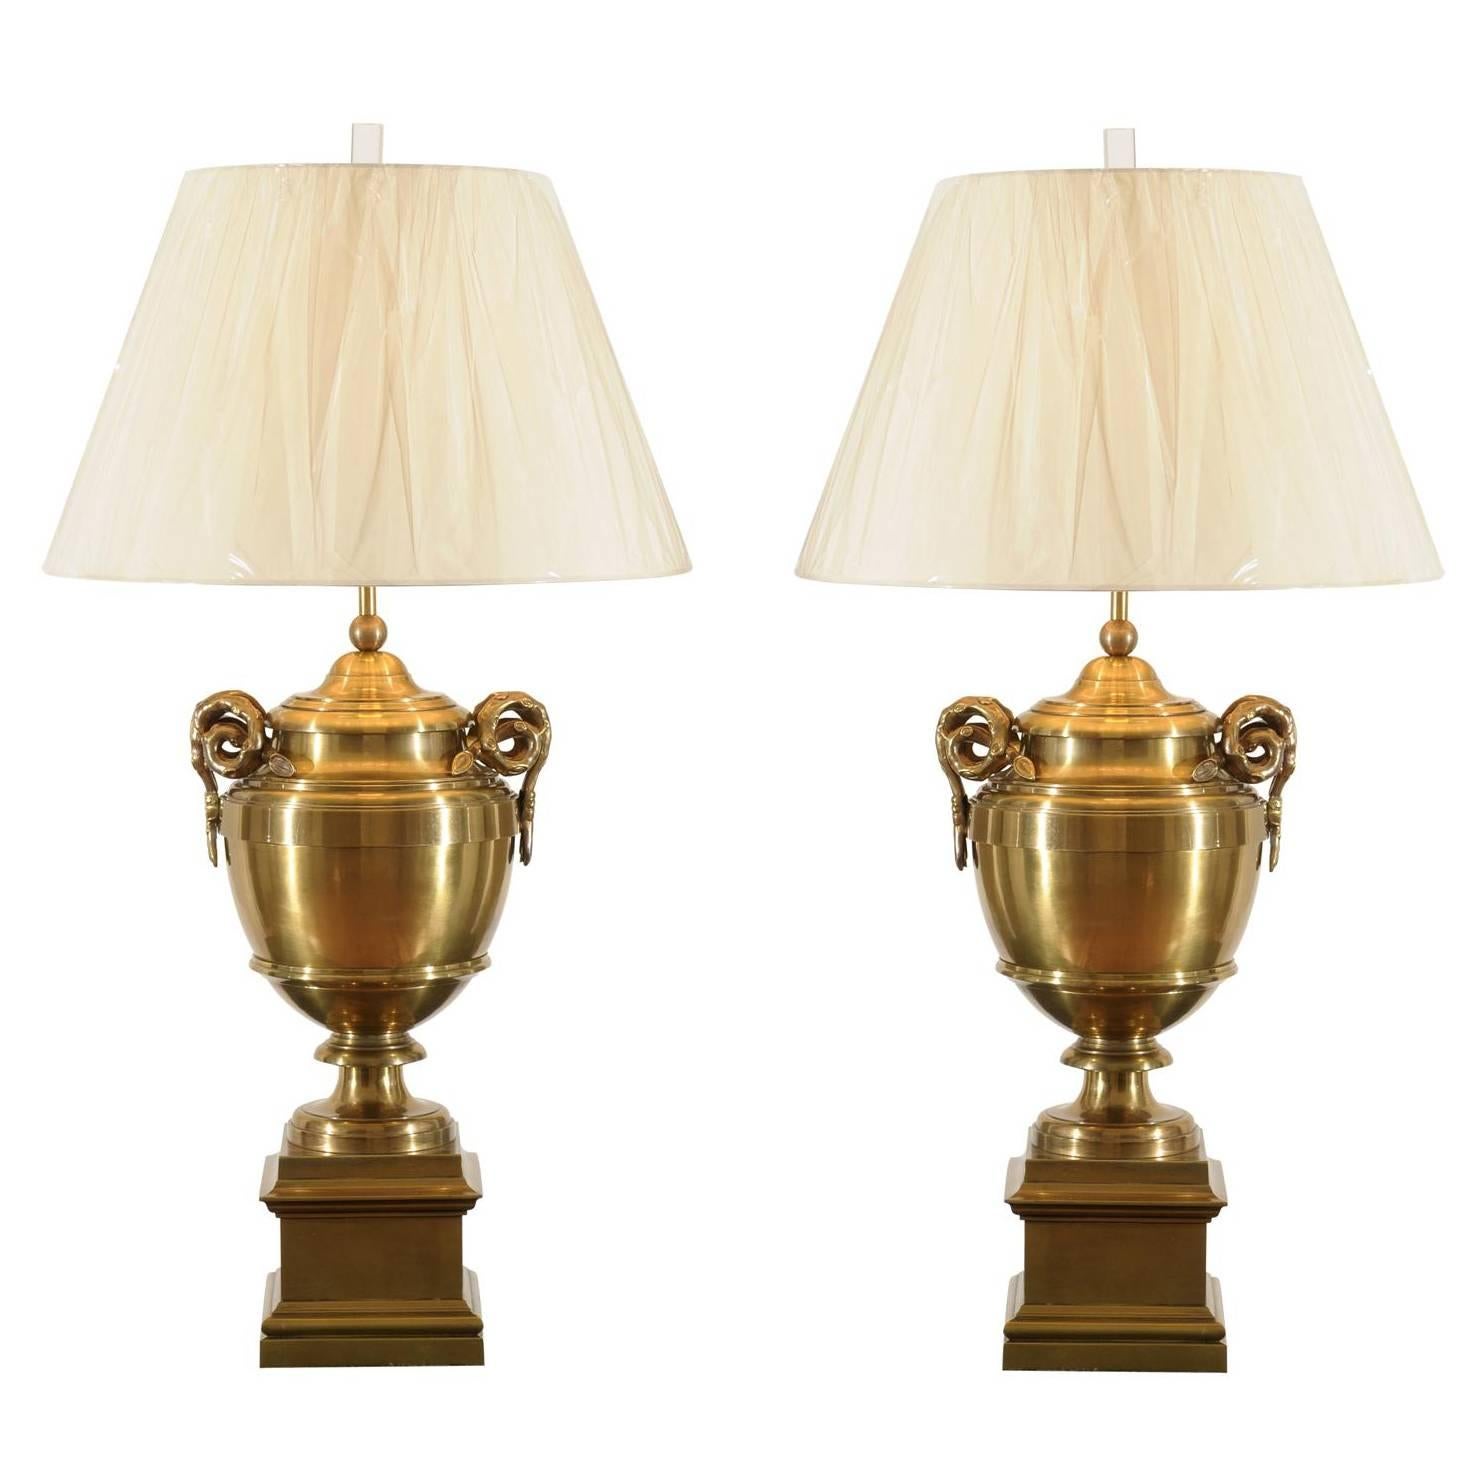 Ein exquisites Paar Urnenlampen aus Messing im Stil von Maison Jansen